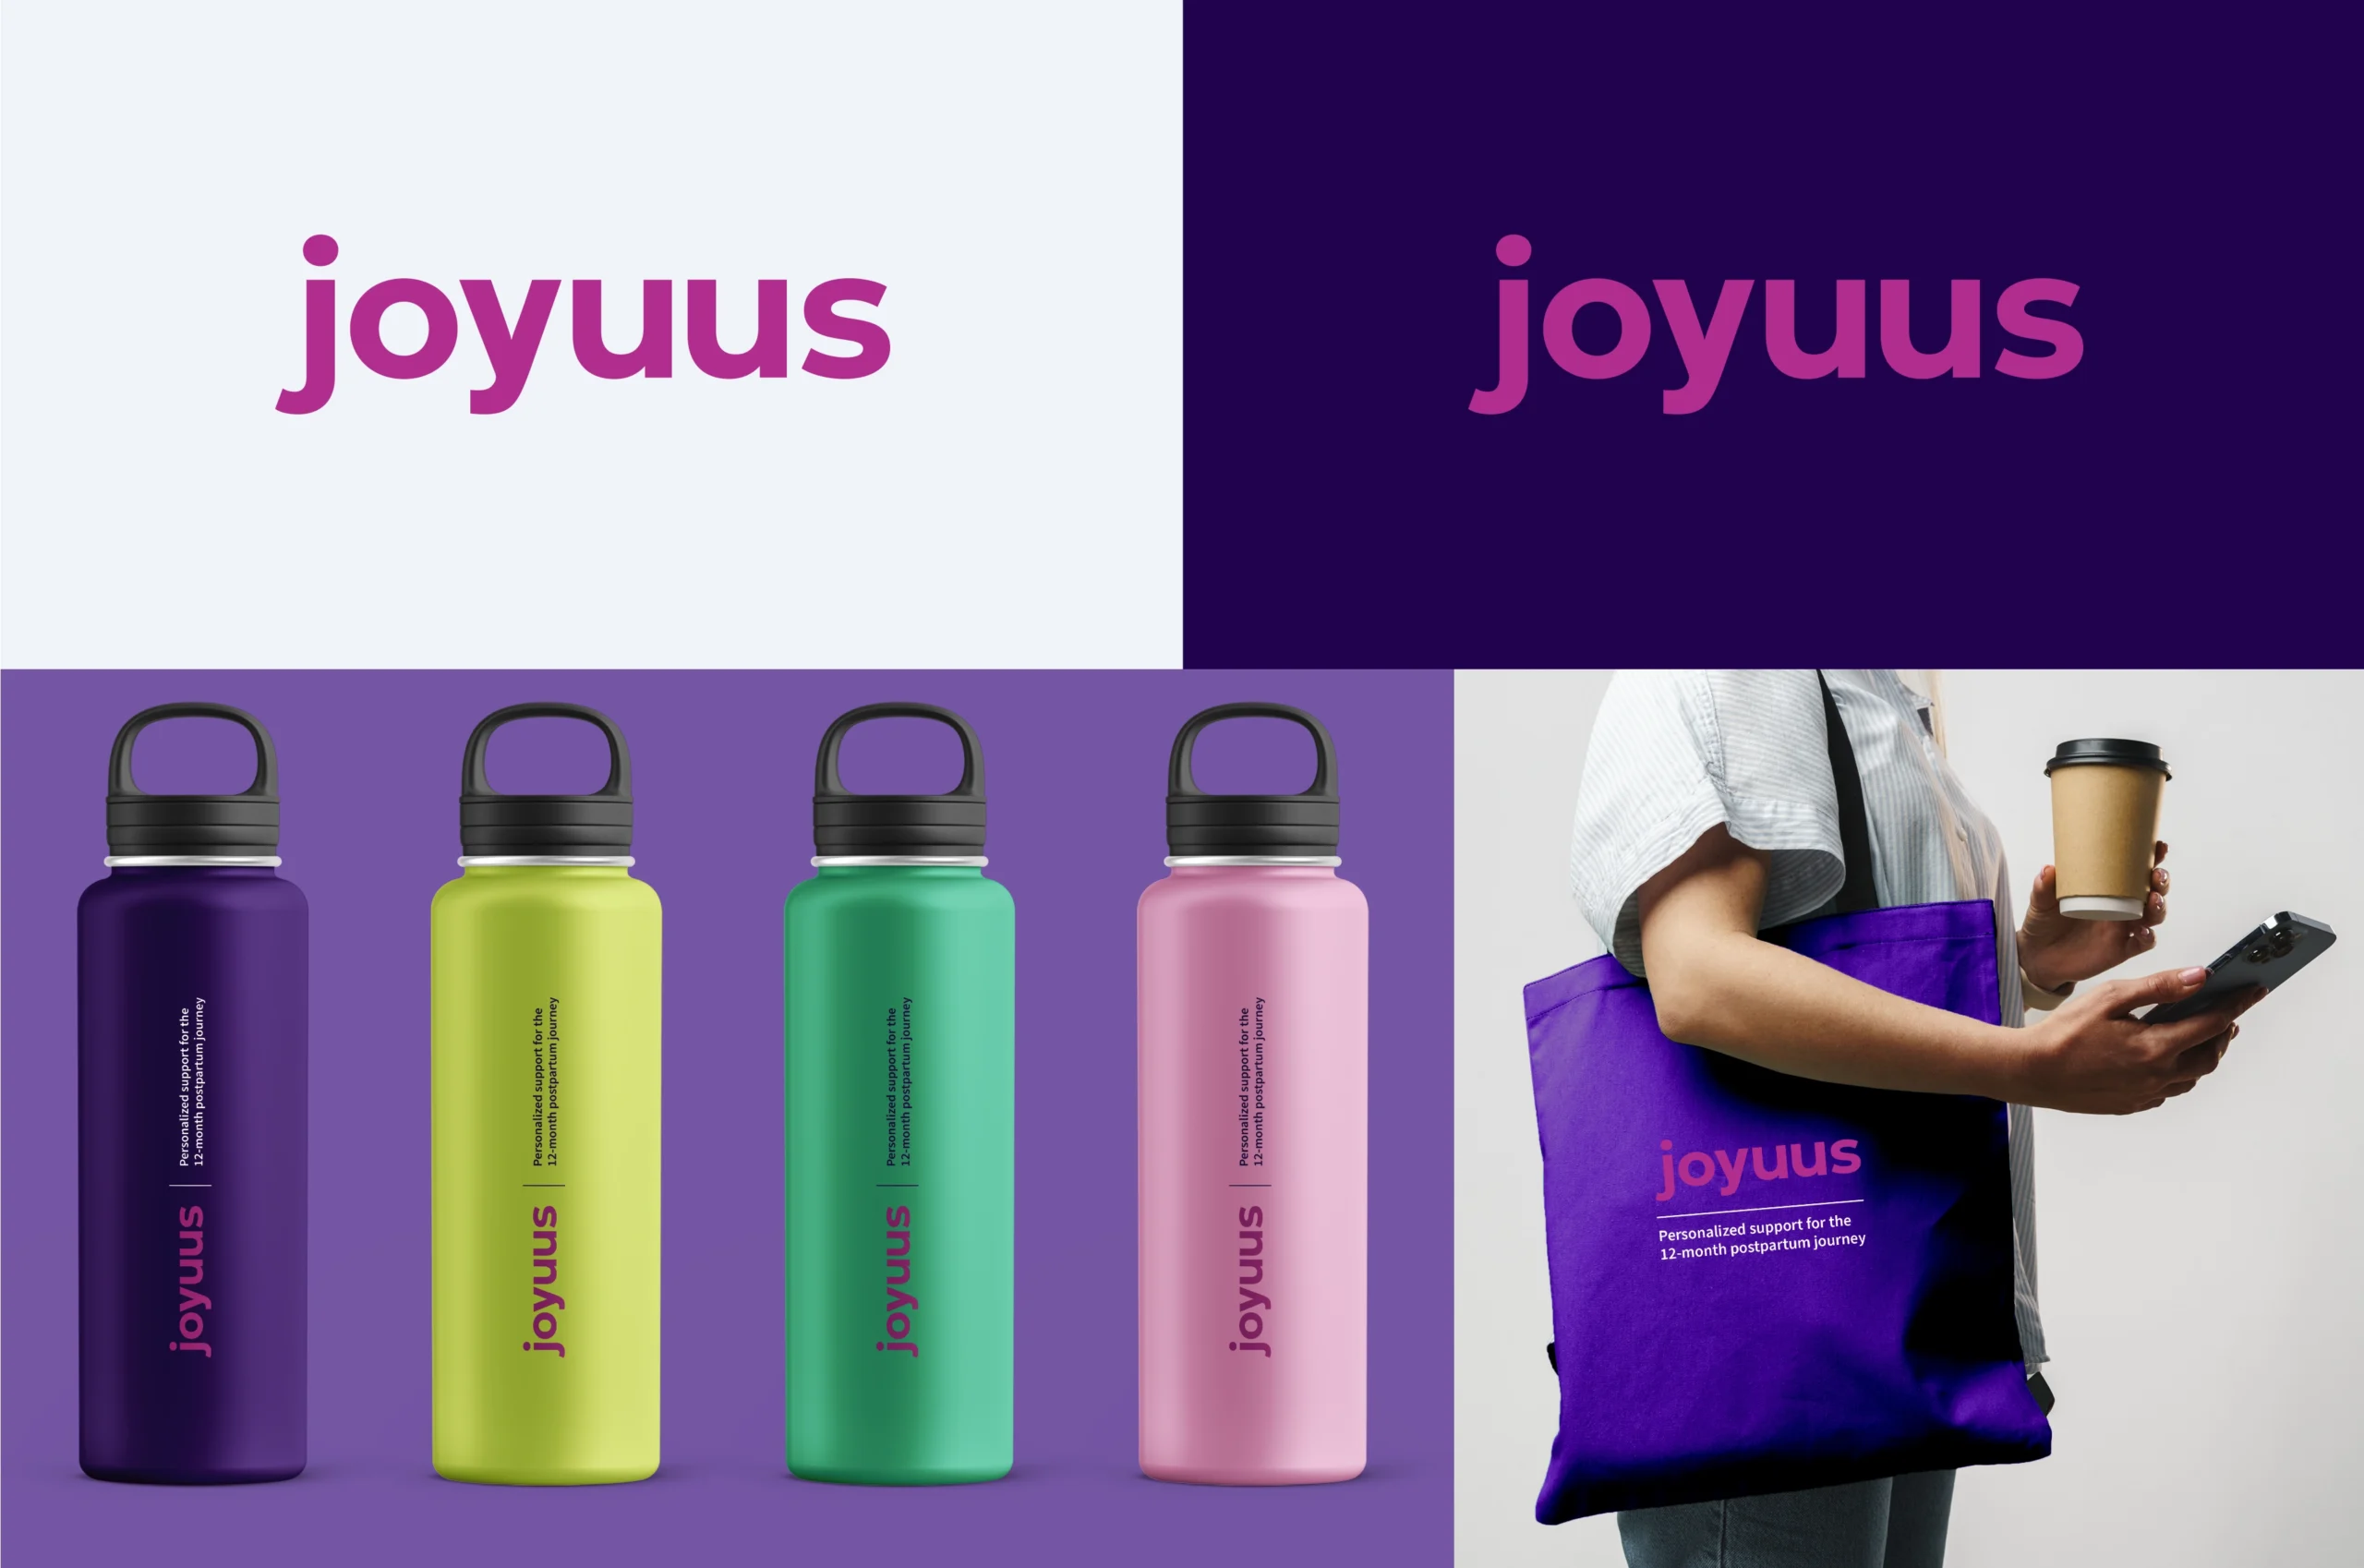 Joyuus Visual Identity - logos